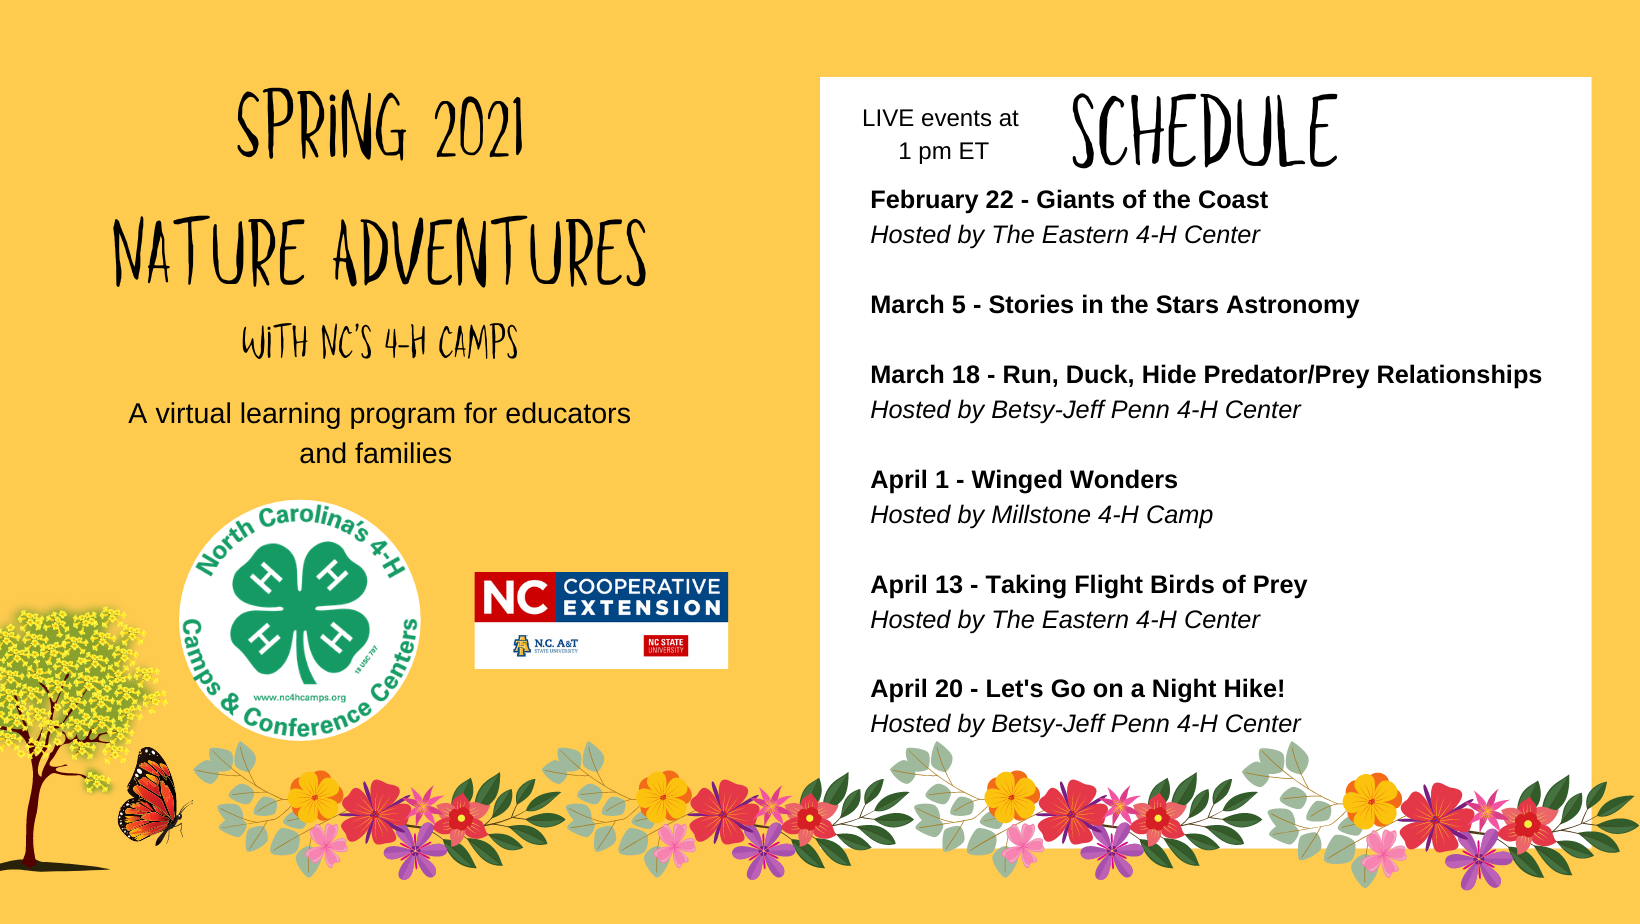 Nature Adventures Schedule flyer image